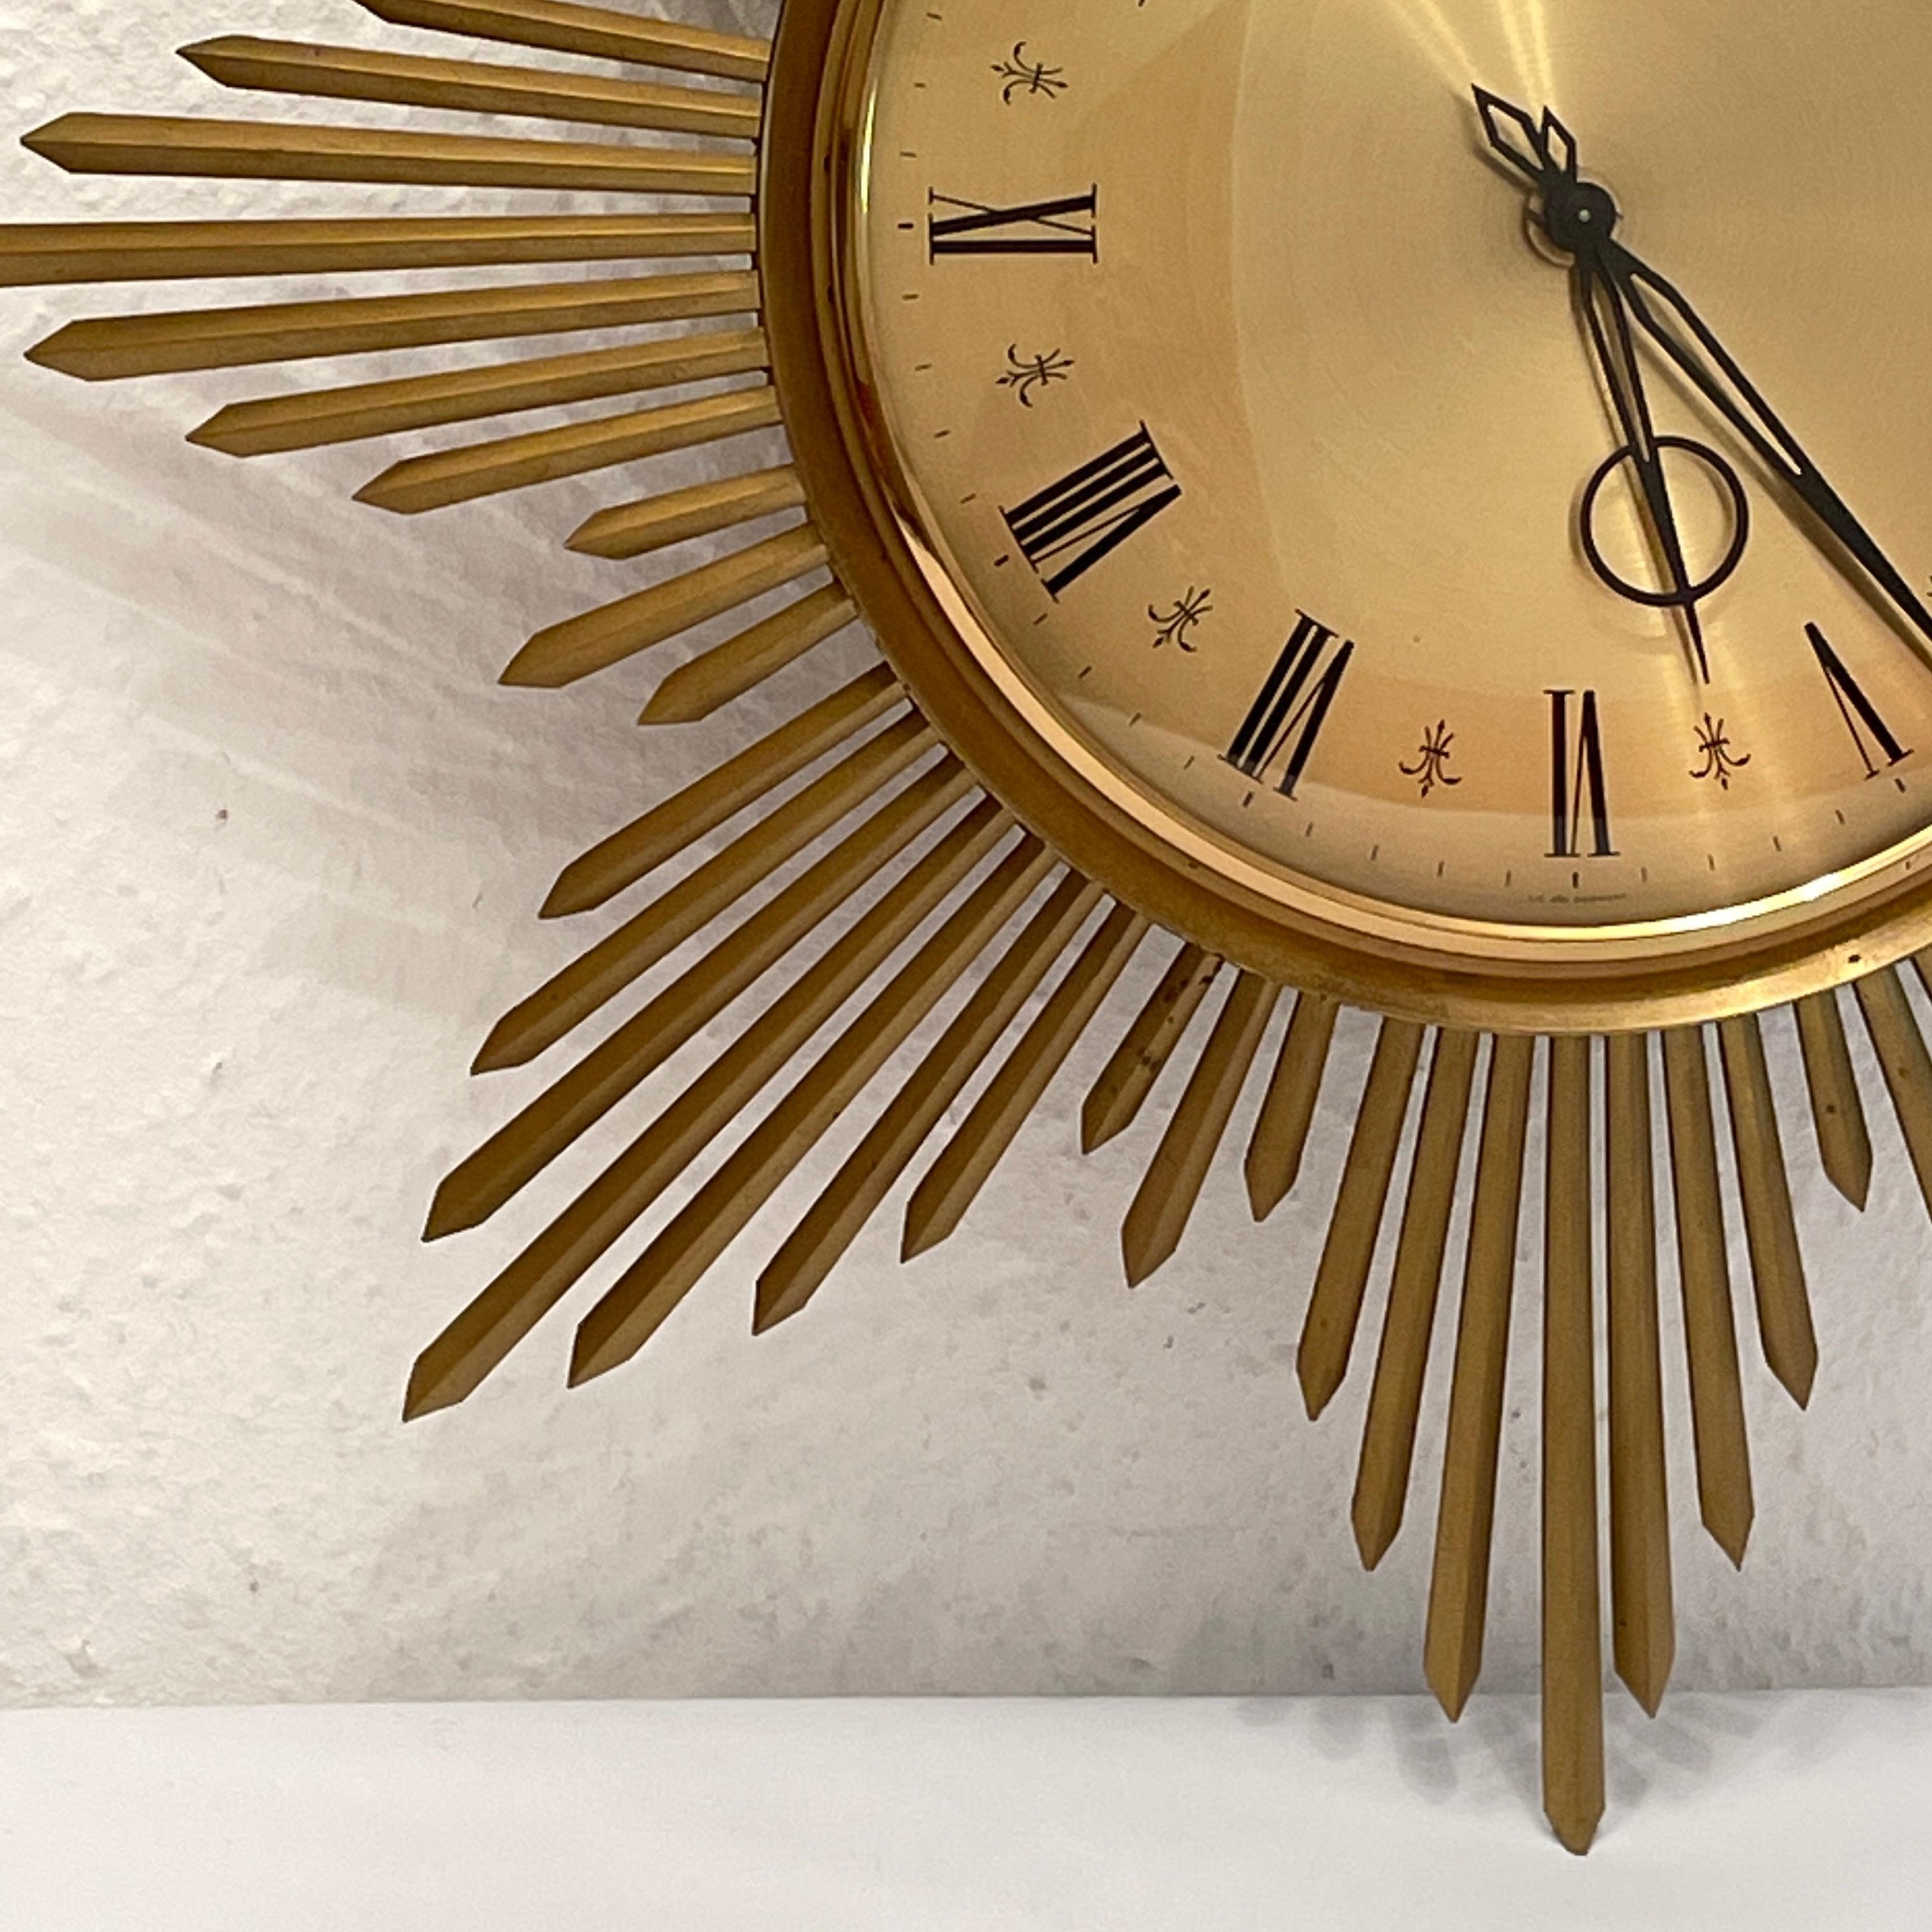 Superbe horloge murale originale Junghans ATO-MAT S sunburst des années 1960. Avec un bel entourage en laiton soleillé illustrant parfaitement l'ambiance de la décennie. L'horloge a la particularité d'avoir un visage articulé permettant d'accéder